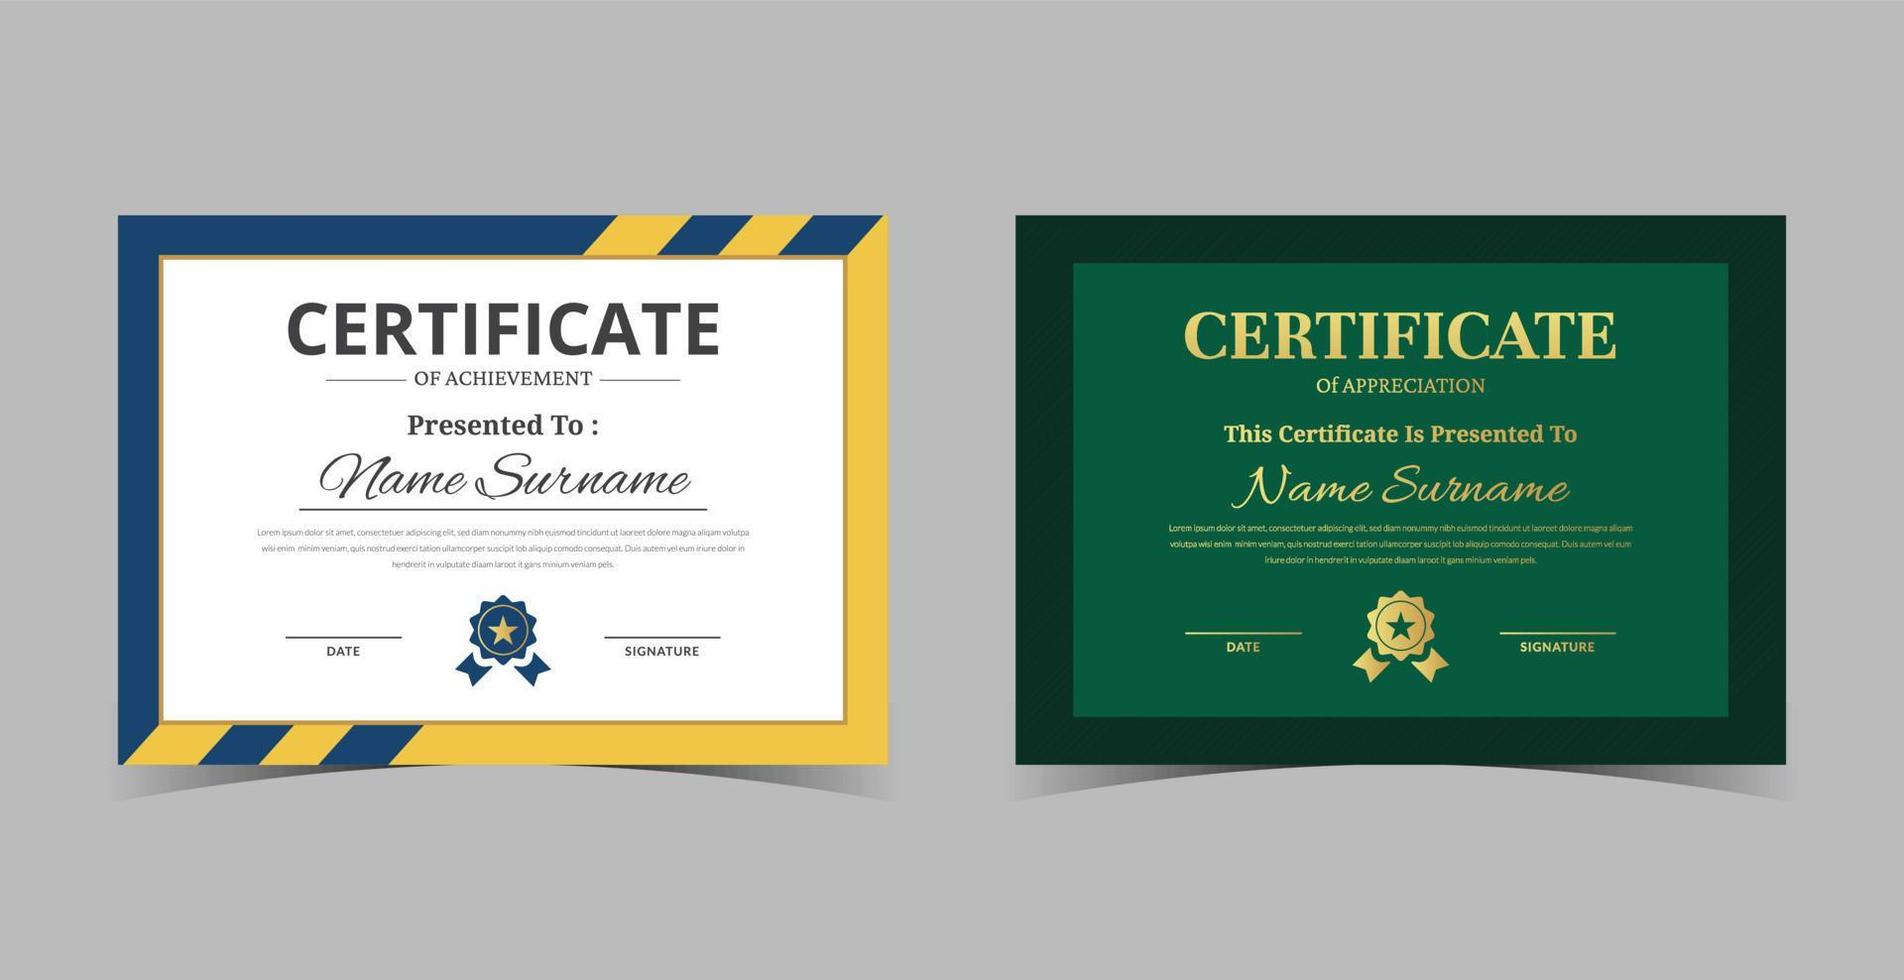 modèle de certificat d'appréciation, certificat de réussite, modèle de diplôme de récompenses vecteur